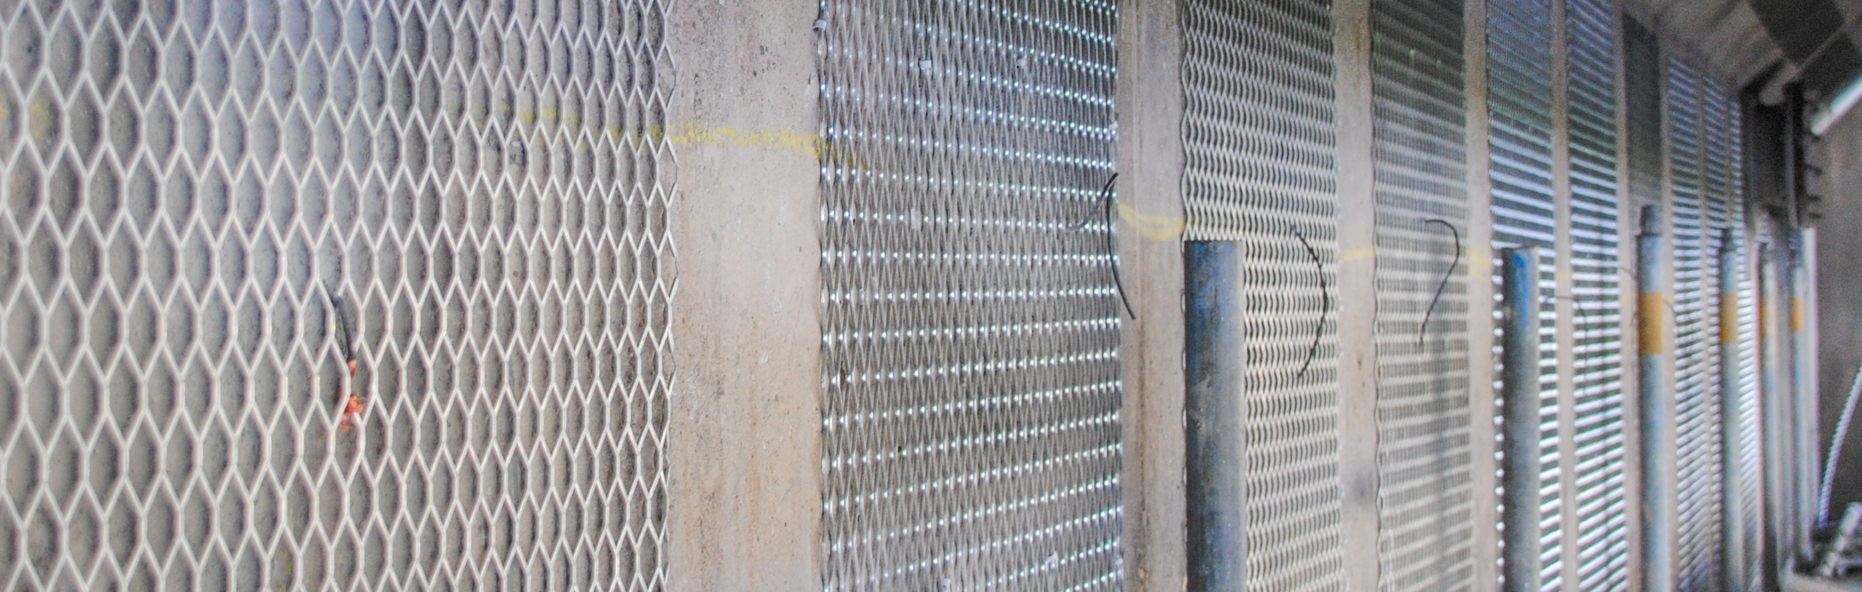 Zinkgaas anode kopen voor galvanische kathodische bescherming van beton